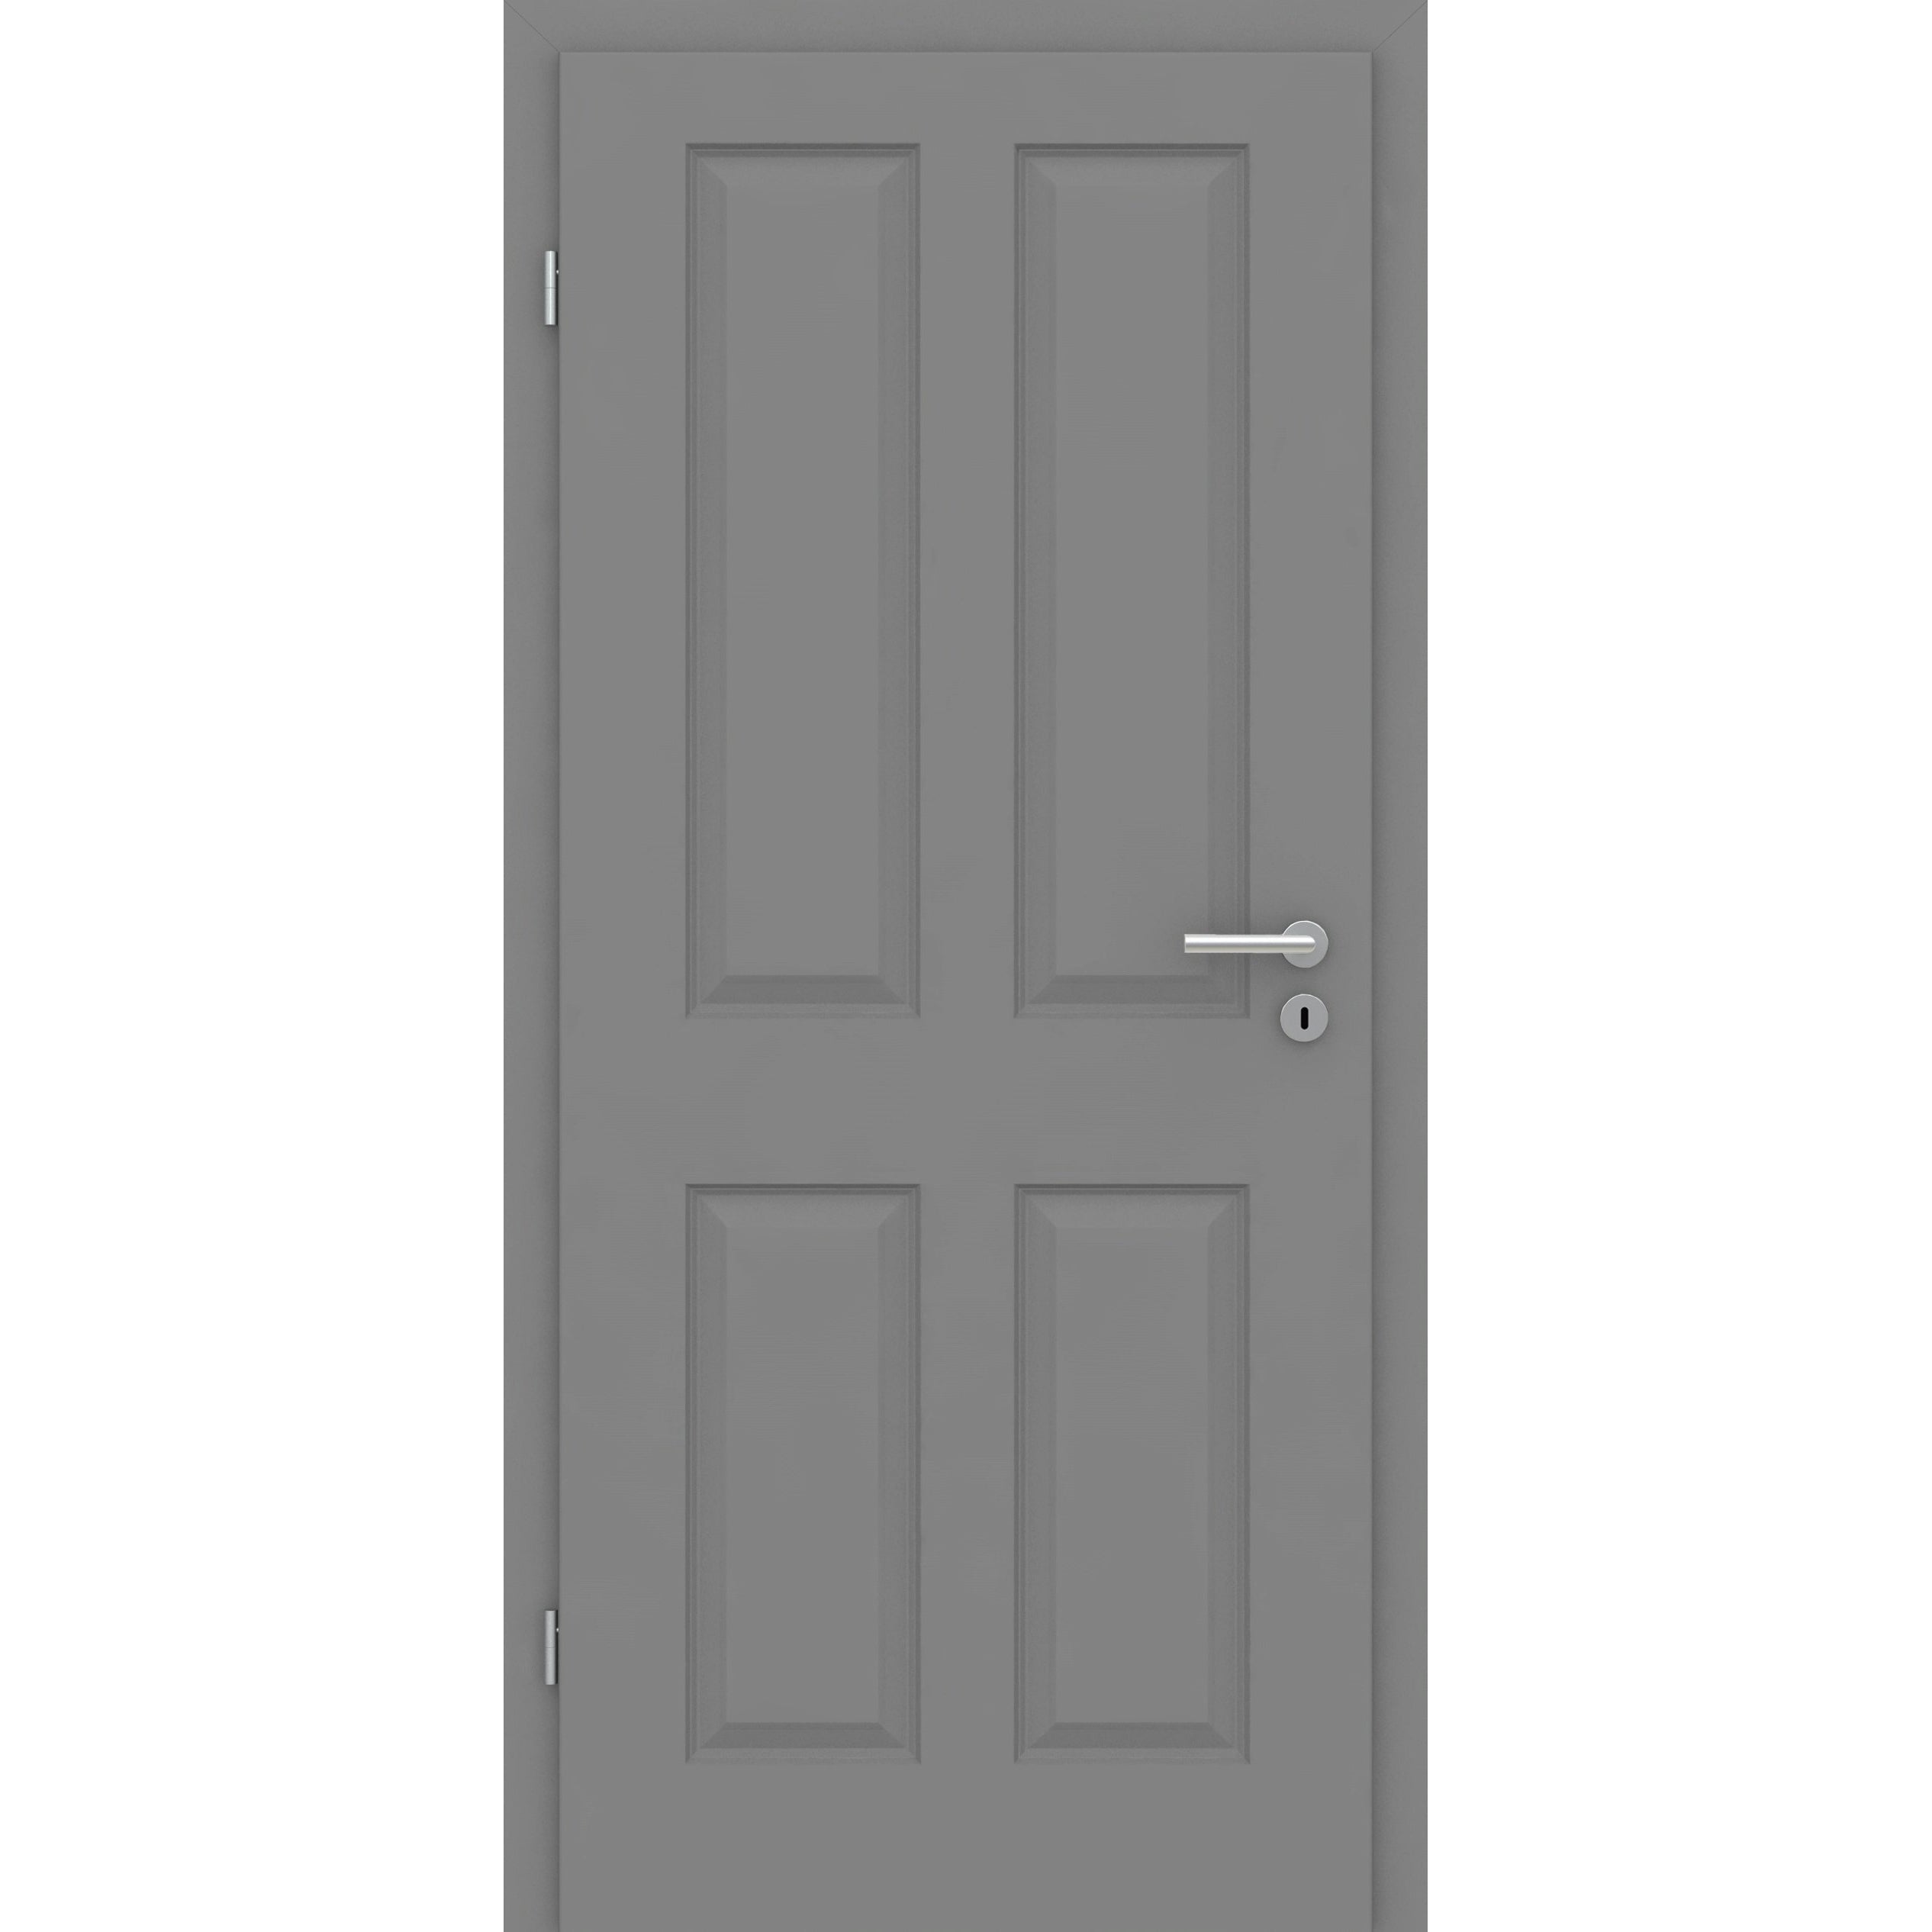 Wohnungseingangstür mit Zarge grau 4 Kassetten Designkante SK1 / KK3 - Modell Stiltür K47